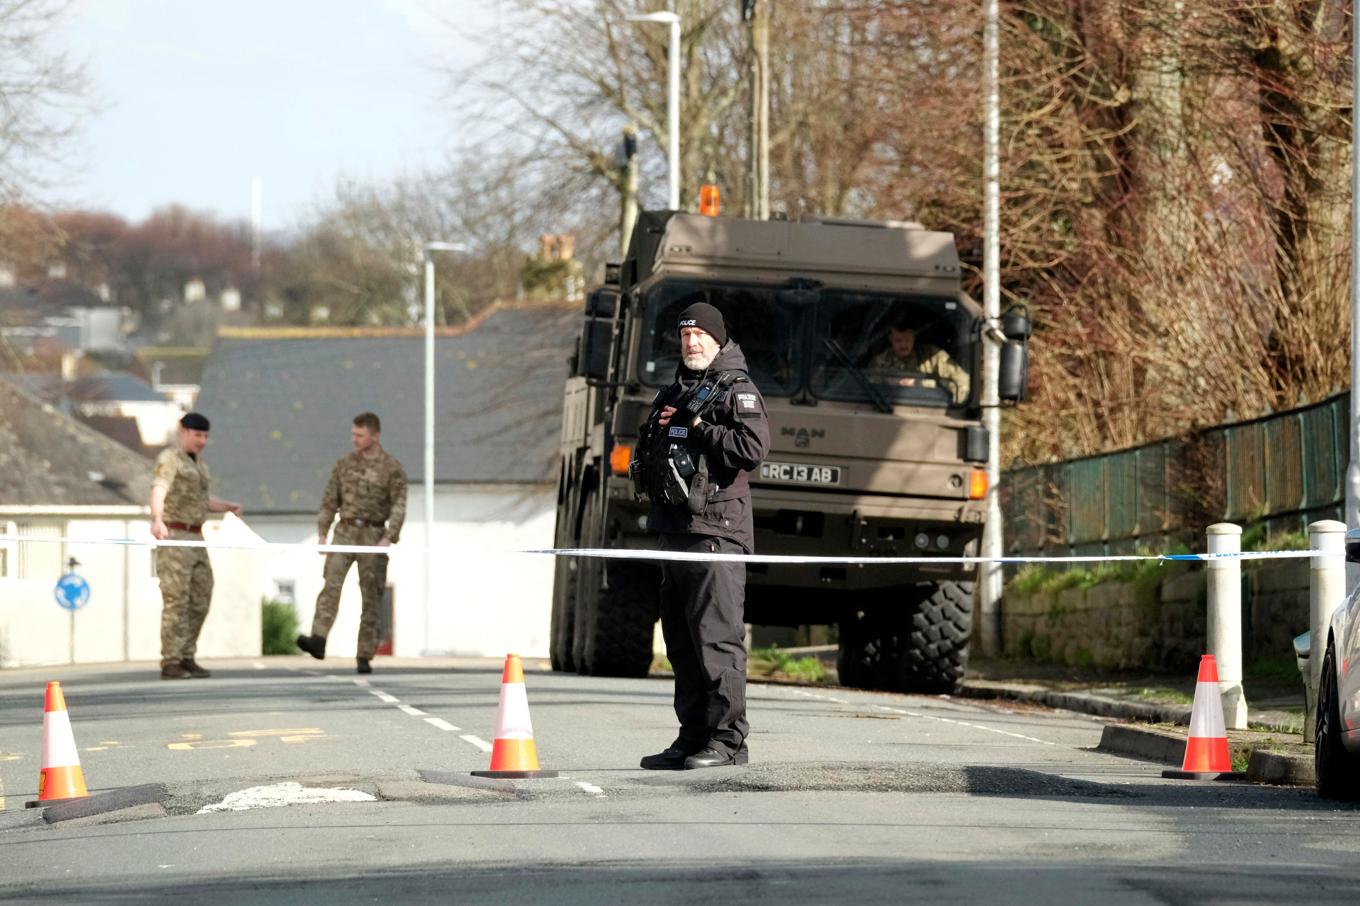 Polis och bombexperter följde färden med den bomb på 500 kilo som oskadliggjordes på lördagen i Plymouth, Storbritannien. Foto: Matt Keeble/PA via AP/TT